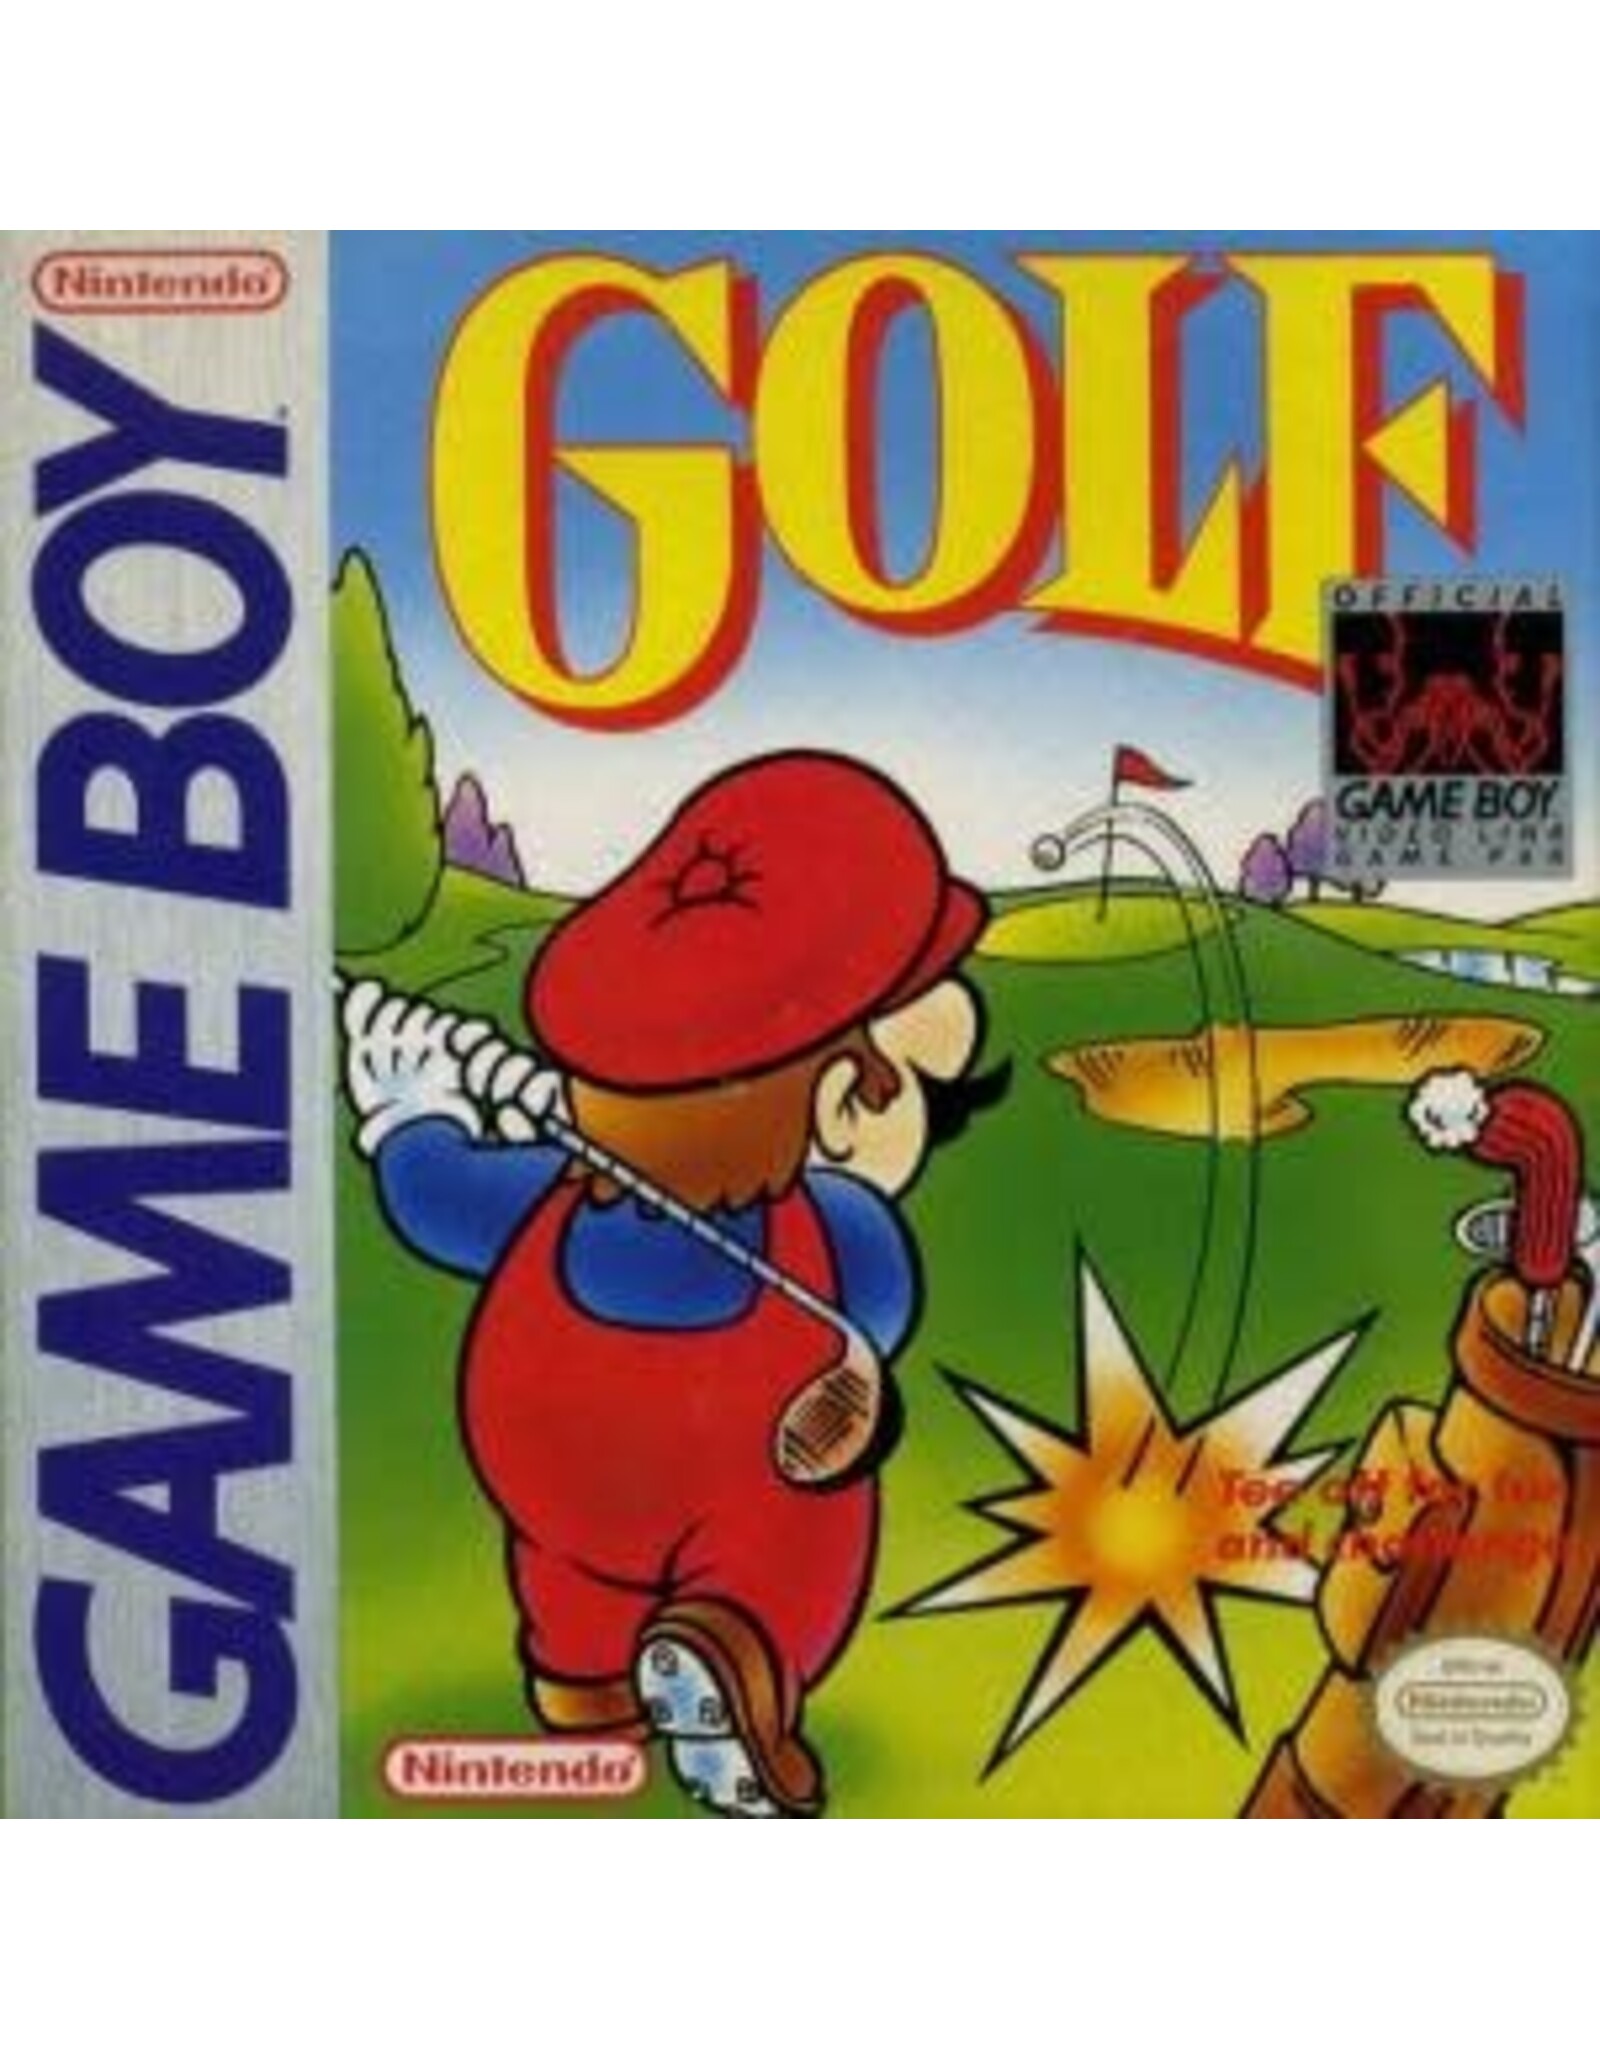 Game Boy Golf (CiB, Damaged Box)